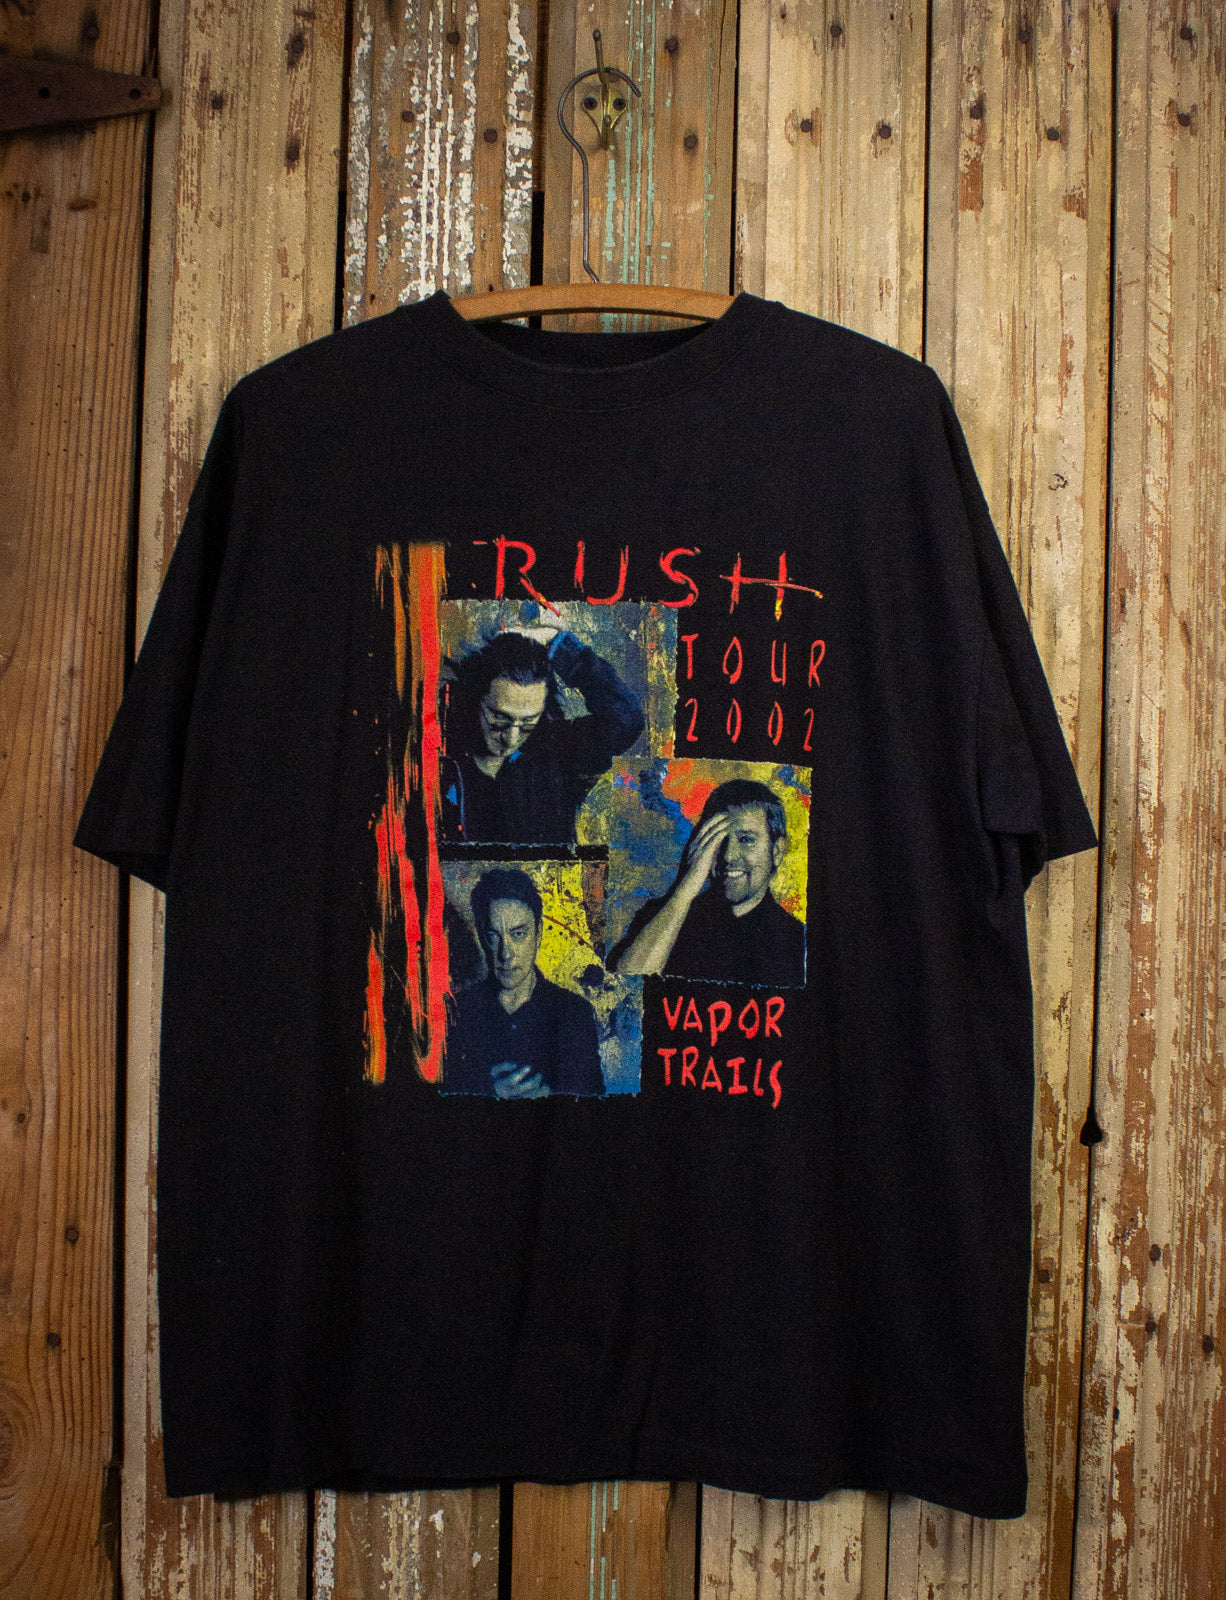 Vintage Rush Vapor Trails Concert T Shirt 2002 Black XL